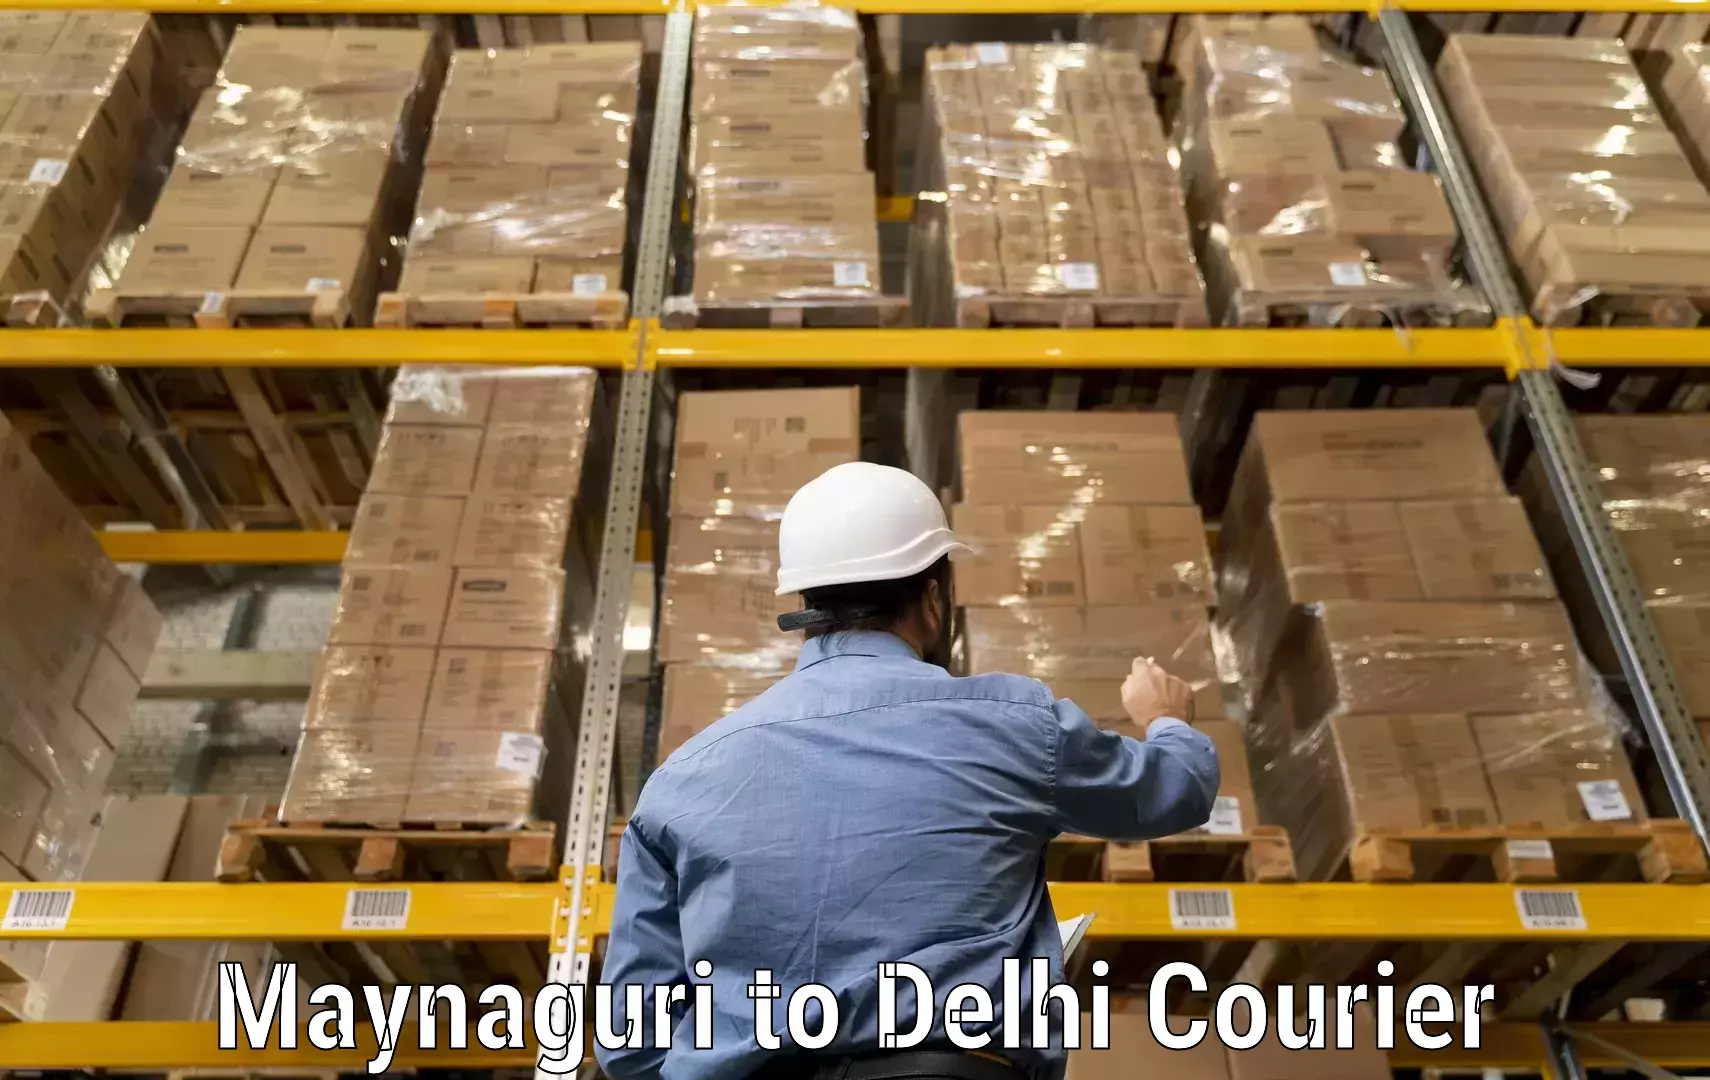 Fast delivery service Maynaguri to Delhi